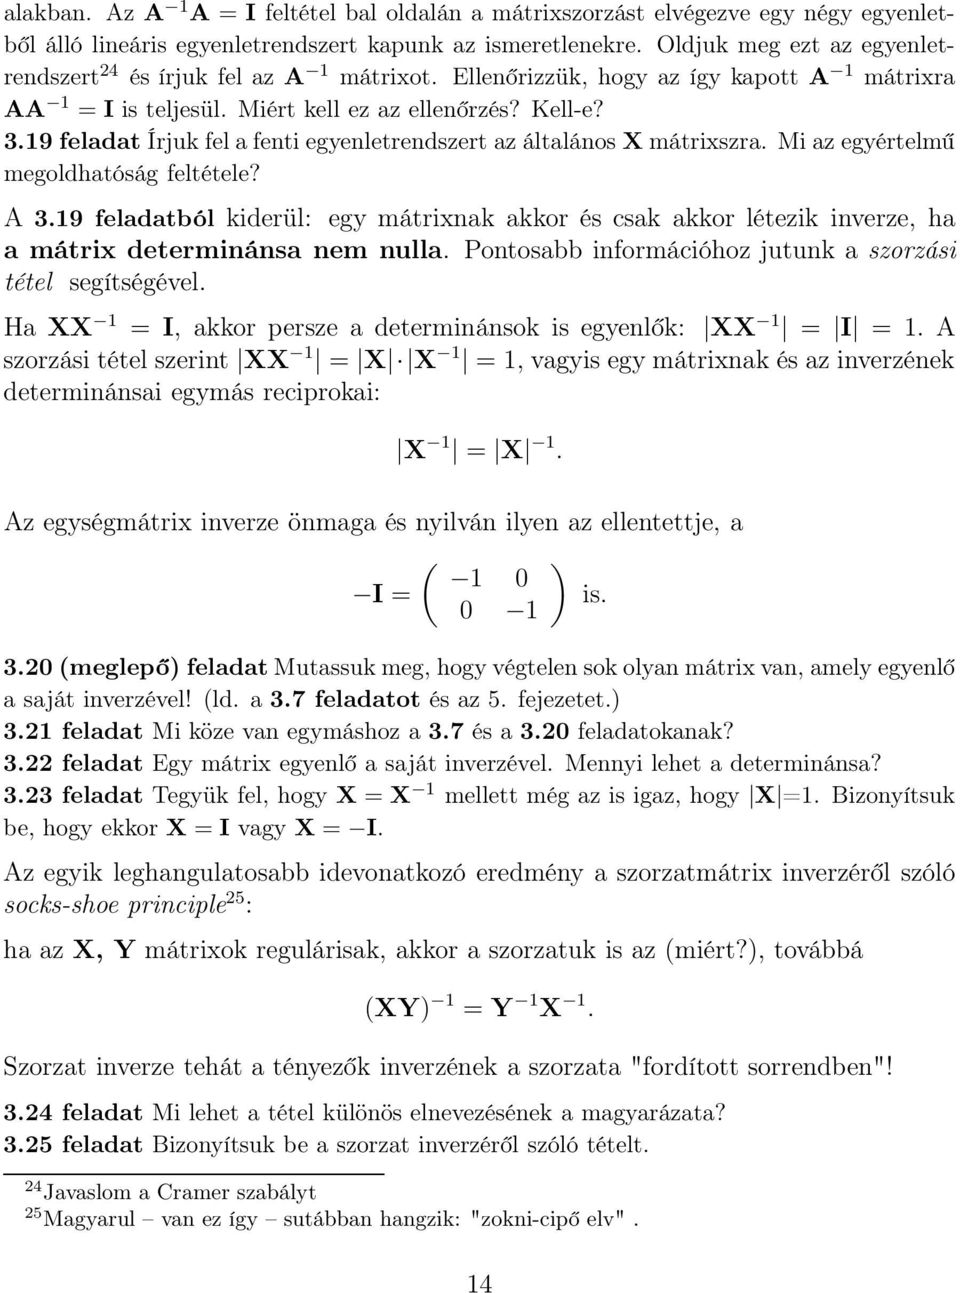 319 feladat Írjuk fel a fenti egyenletrendszert az általános X mátrixszra Mi az egyértelmű megoldhatóság feltétele?